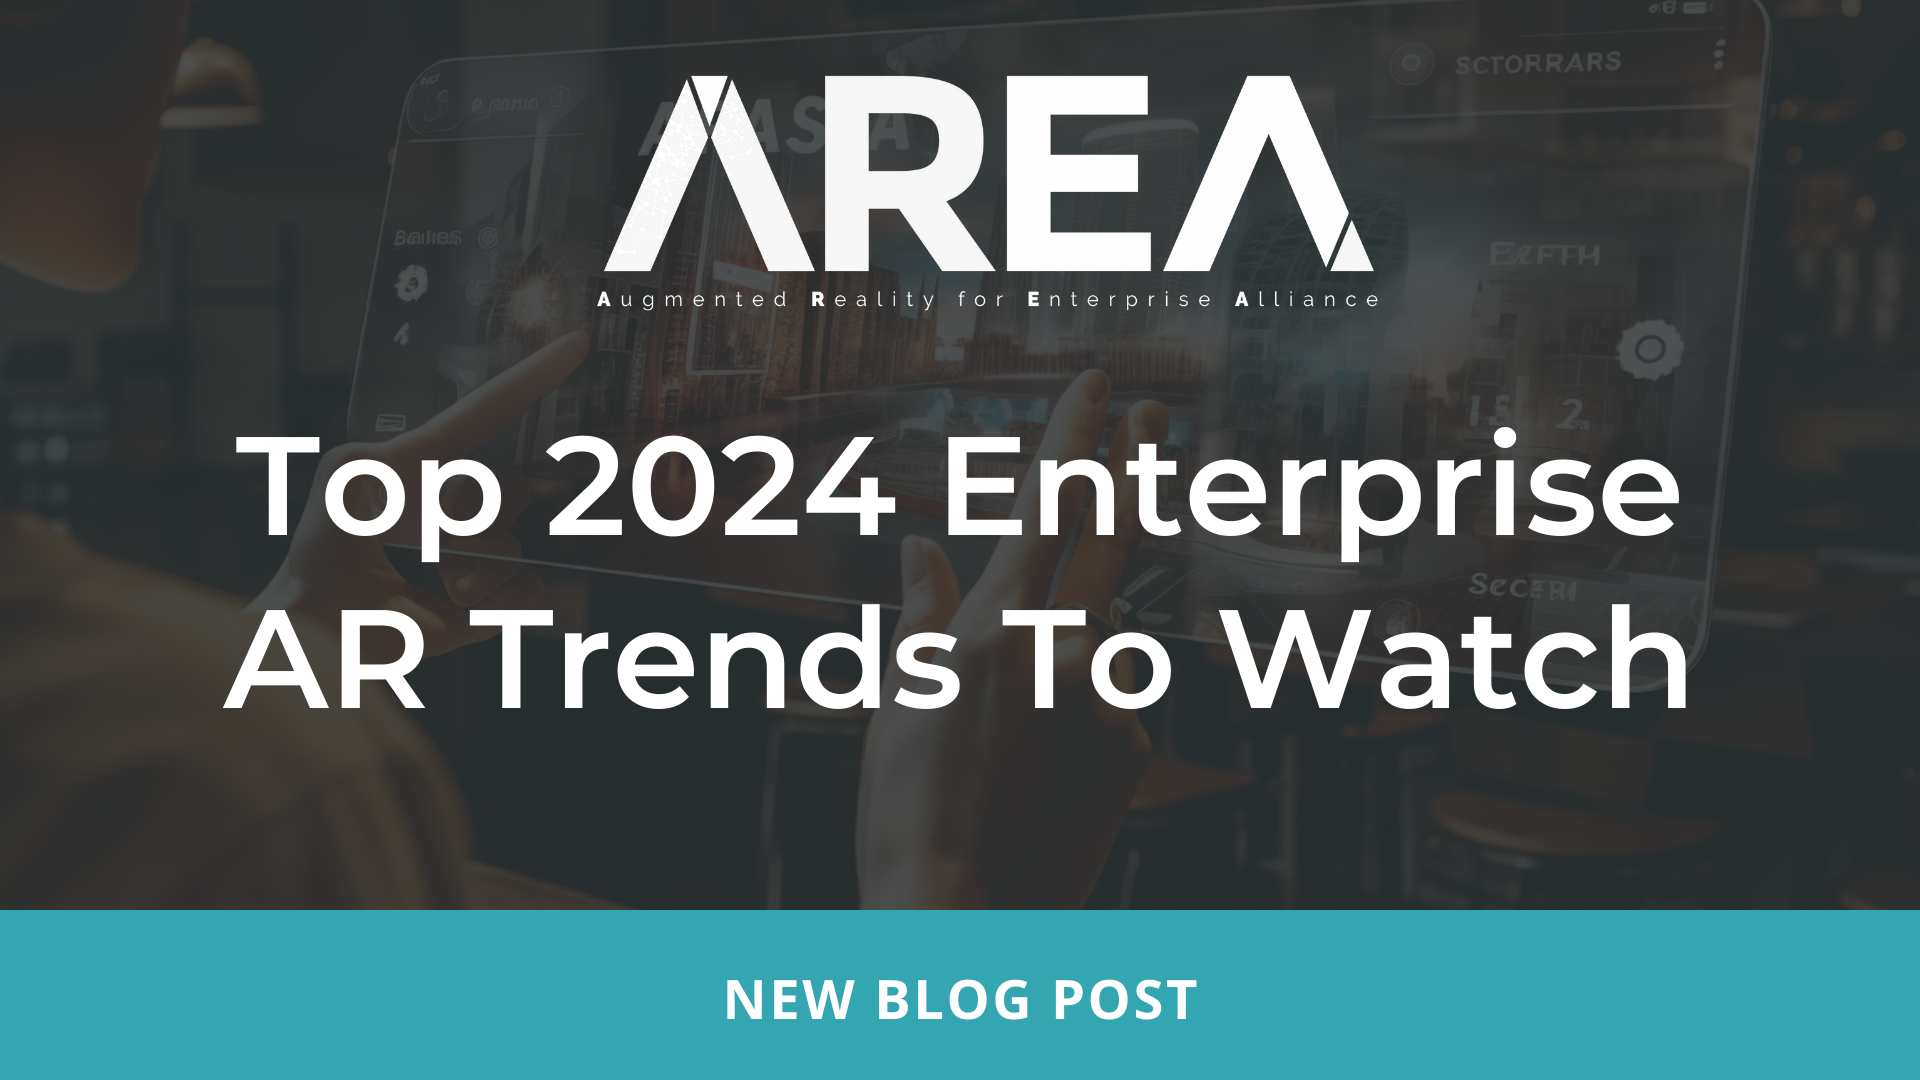 Главные тенденции в области дополненной реальности для предприятий в 2024 году, за которыми стоит следить – AREA